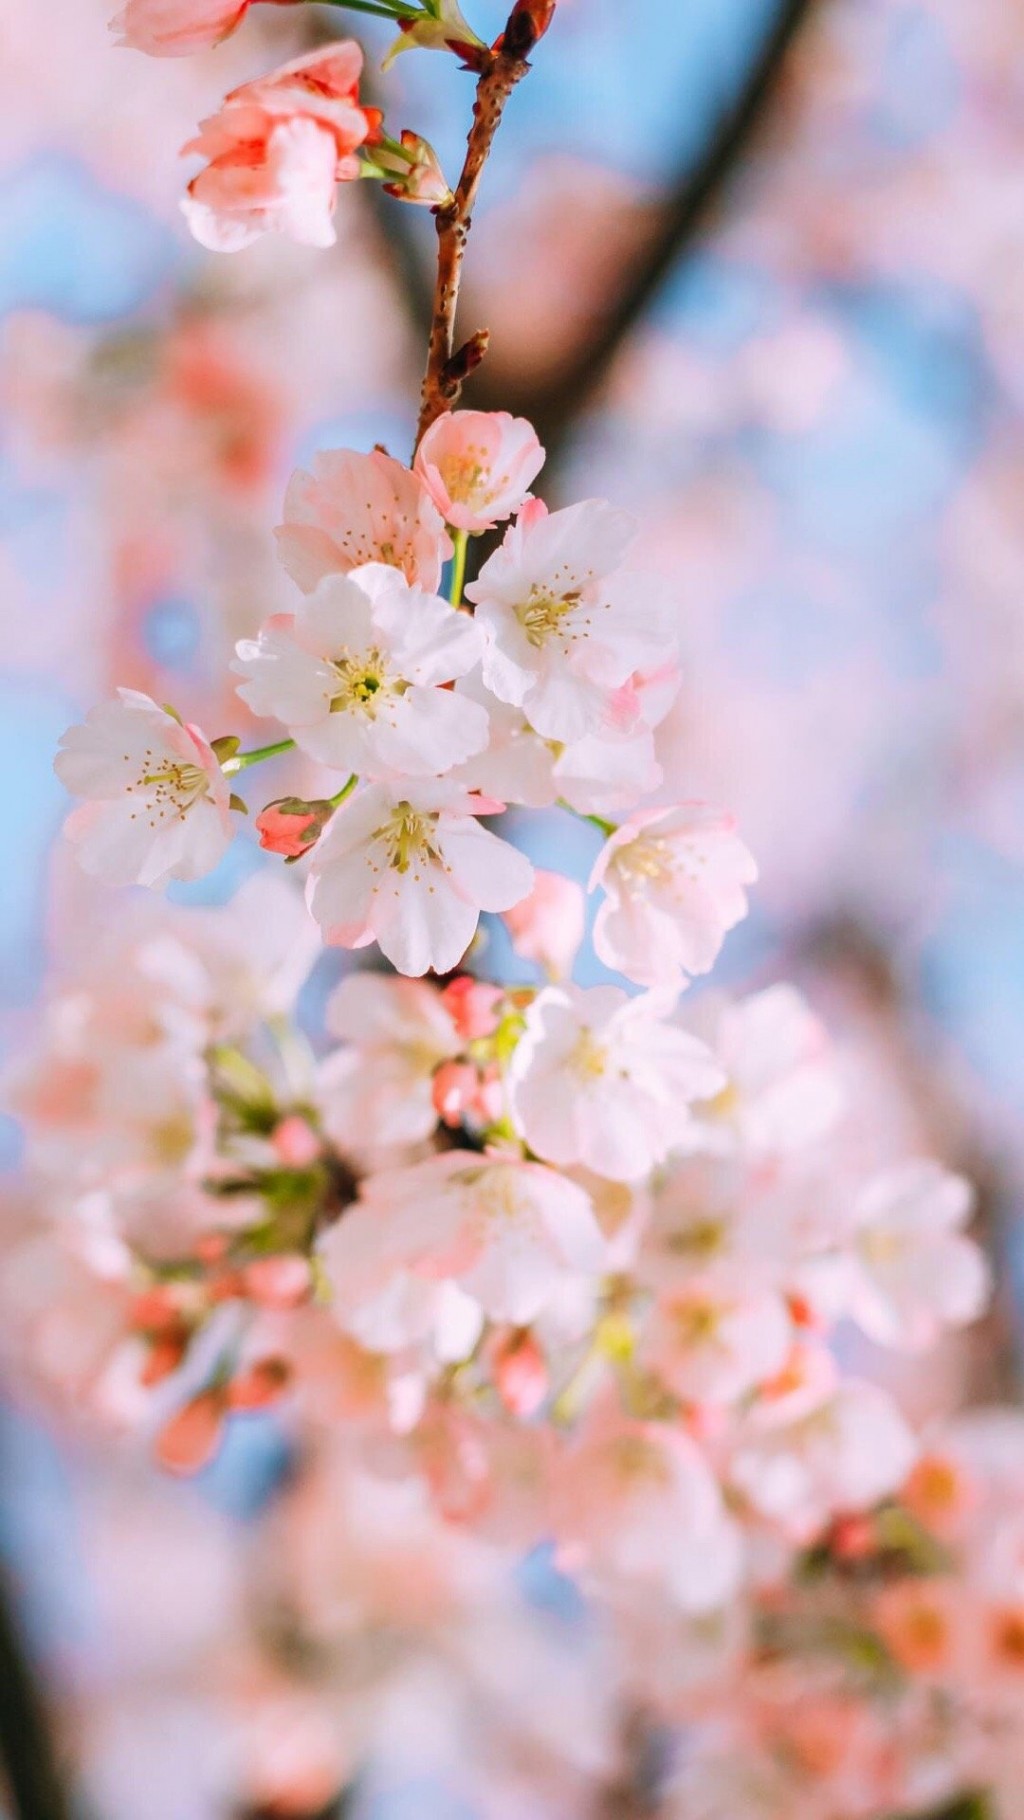 日系清新樱花风景手机壁纸